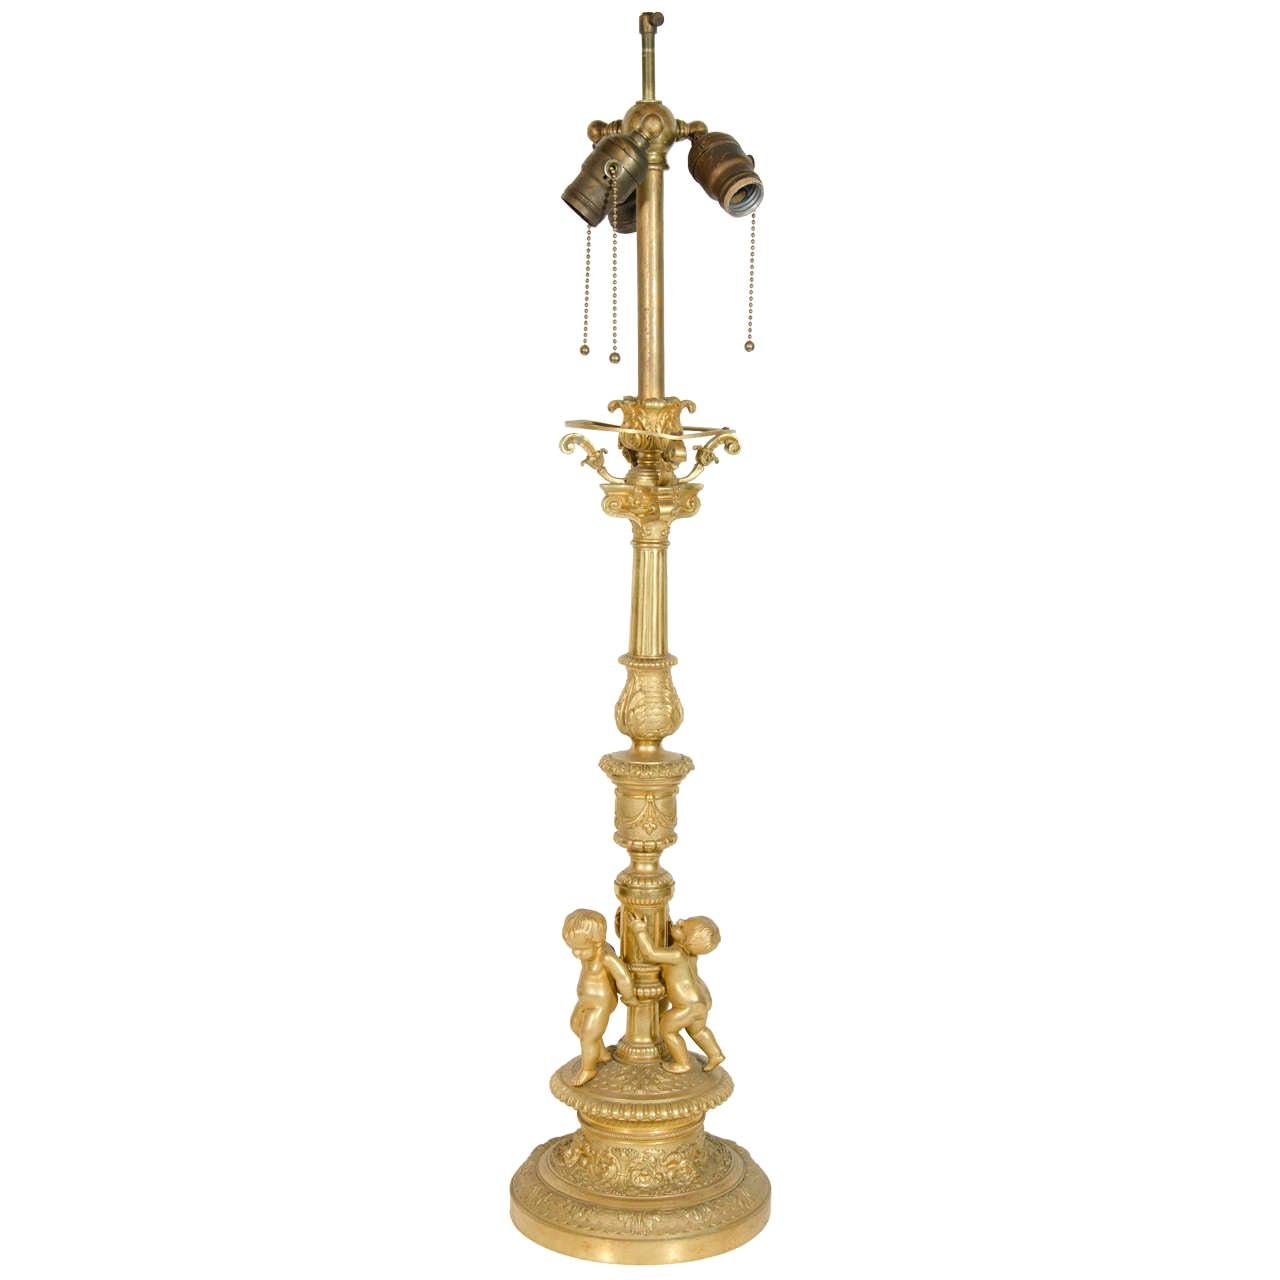 Lampe figurative française ancienne unique de style Louis XVI en bronze doré